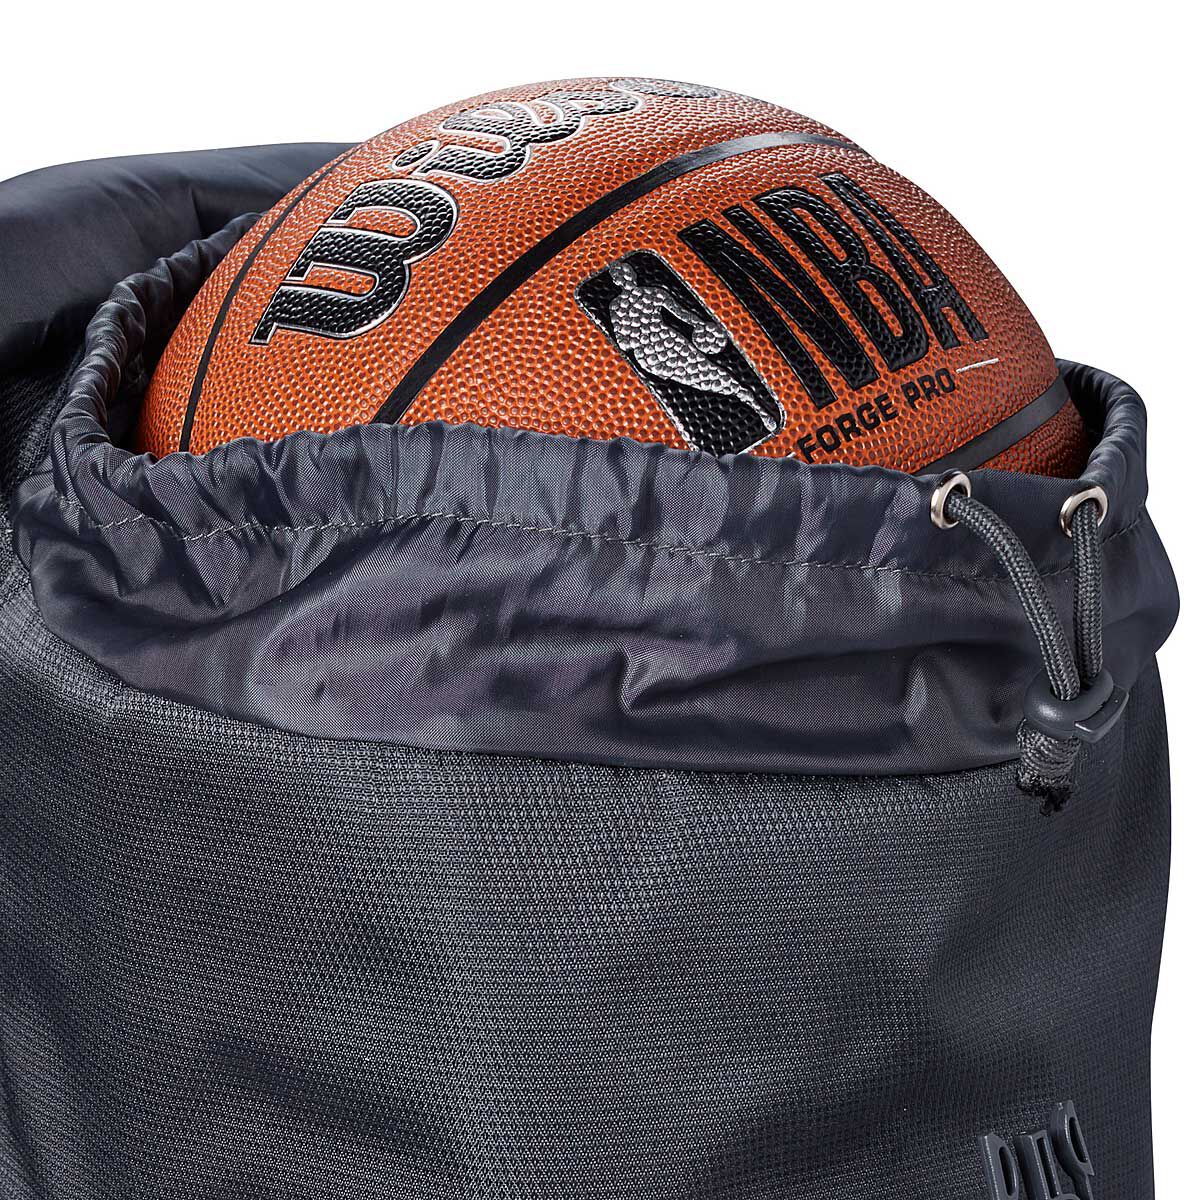 Sport Inspired Handbags: Andrea Bergart's Basketball Purse | Cartera de  moda, Mochila de moda, Carteras